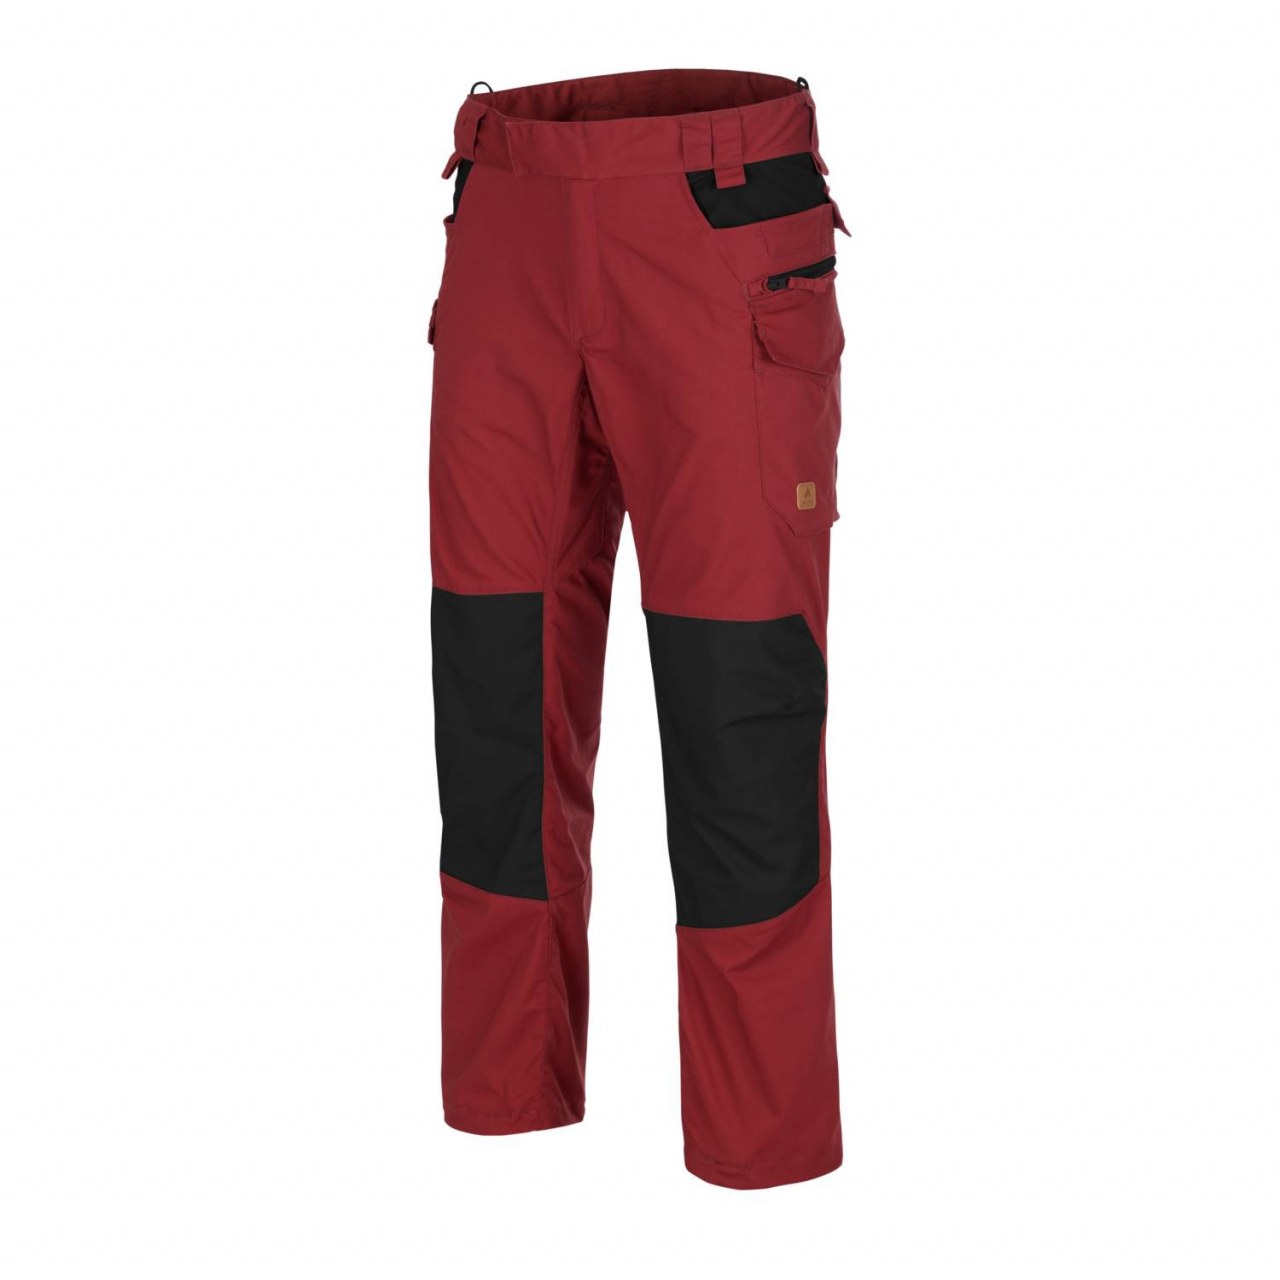 Kalhoty Helikon Pilgrim - červené-černé, XS Long